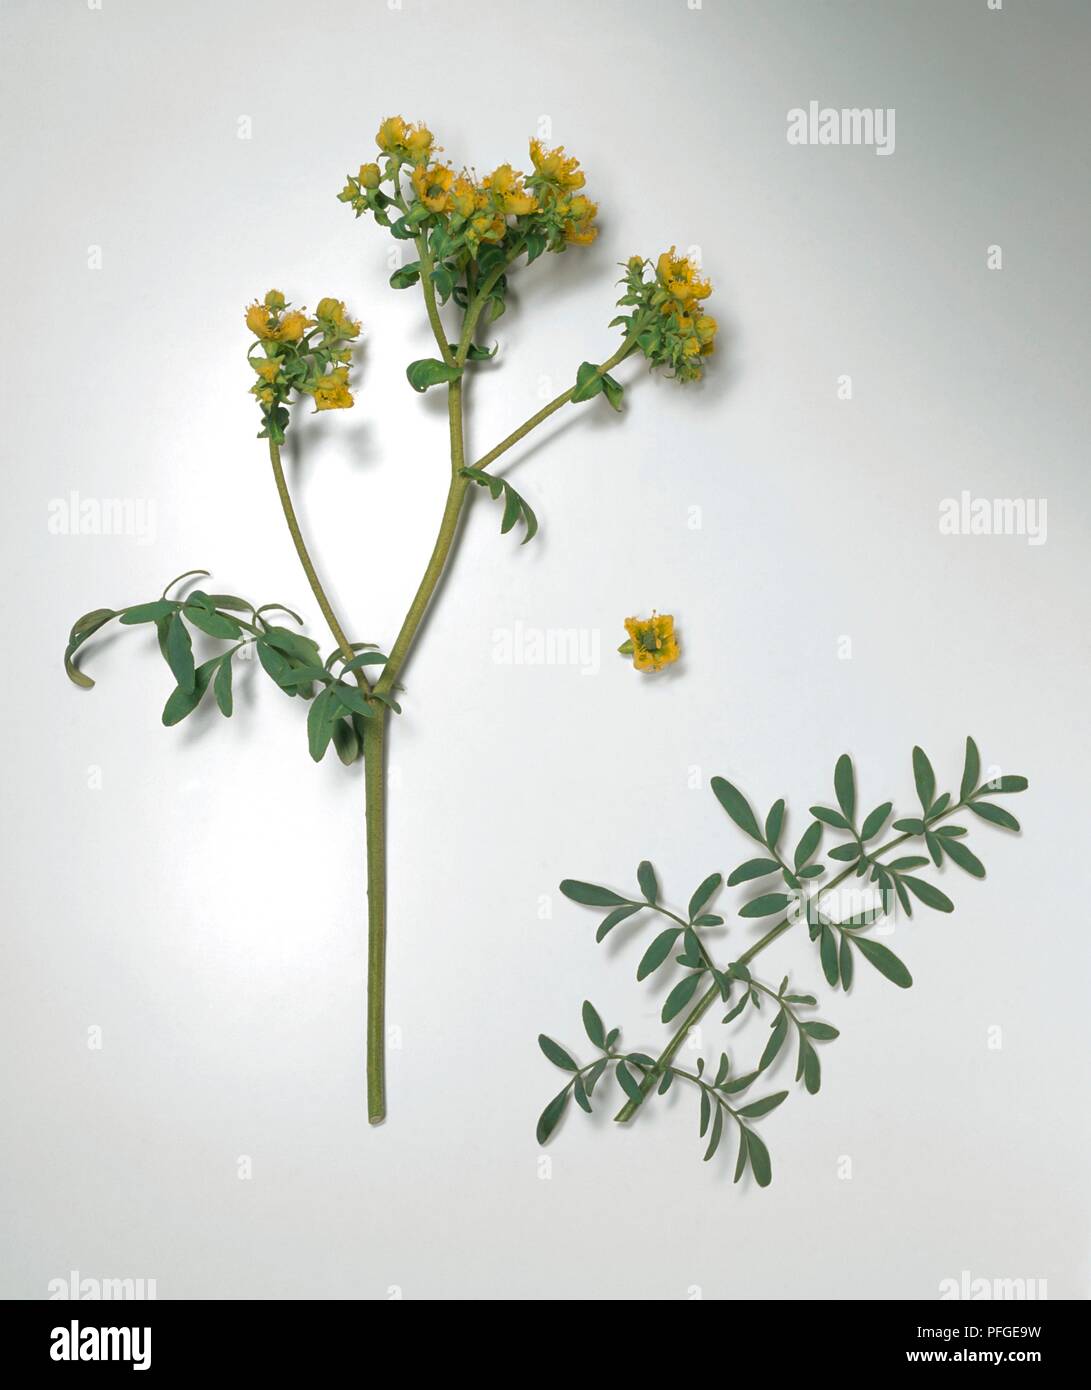 Ruta chalepensis (gesäumte Rue), gelbe Blumen und grüne Blätter auf langen Stielen Stockfoto